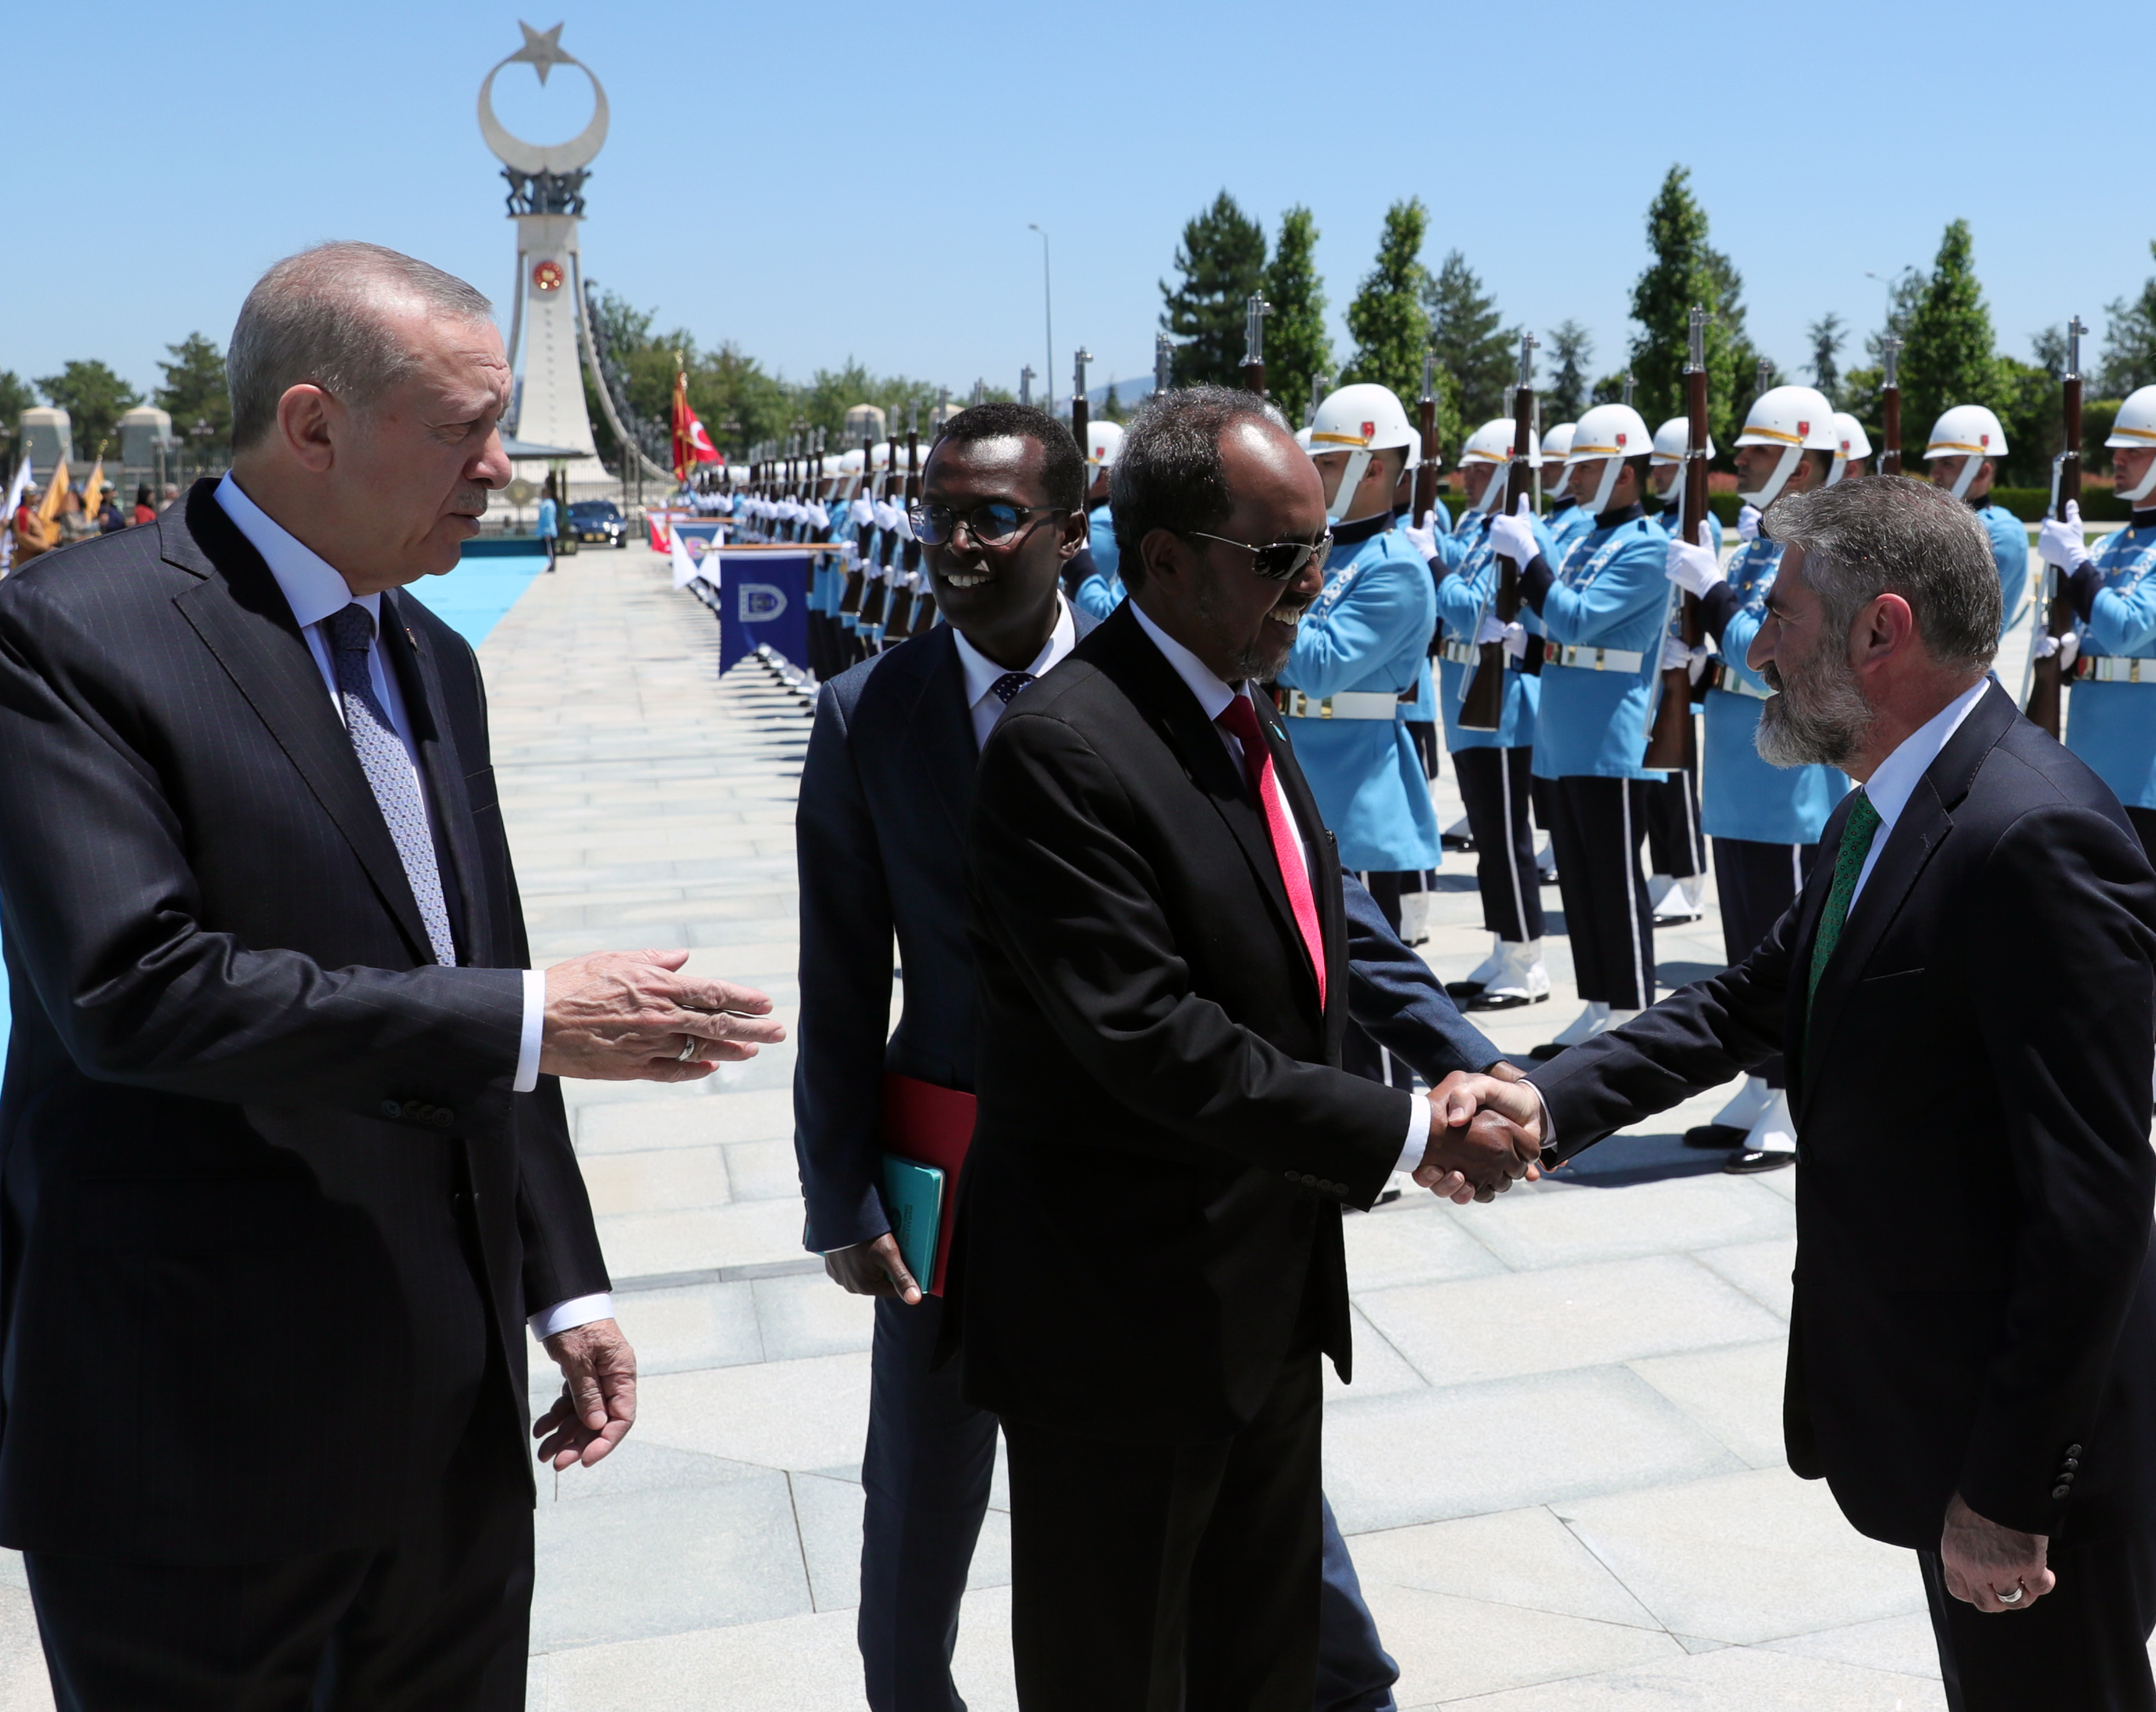 صور استقبال الرئيس أردوغان للرئيس الصومالي في أنقرة